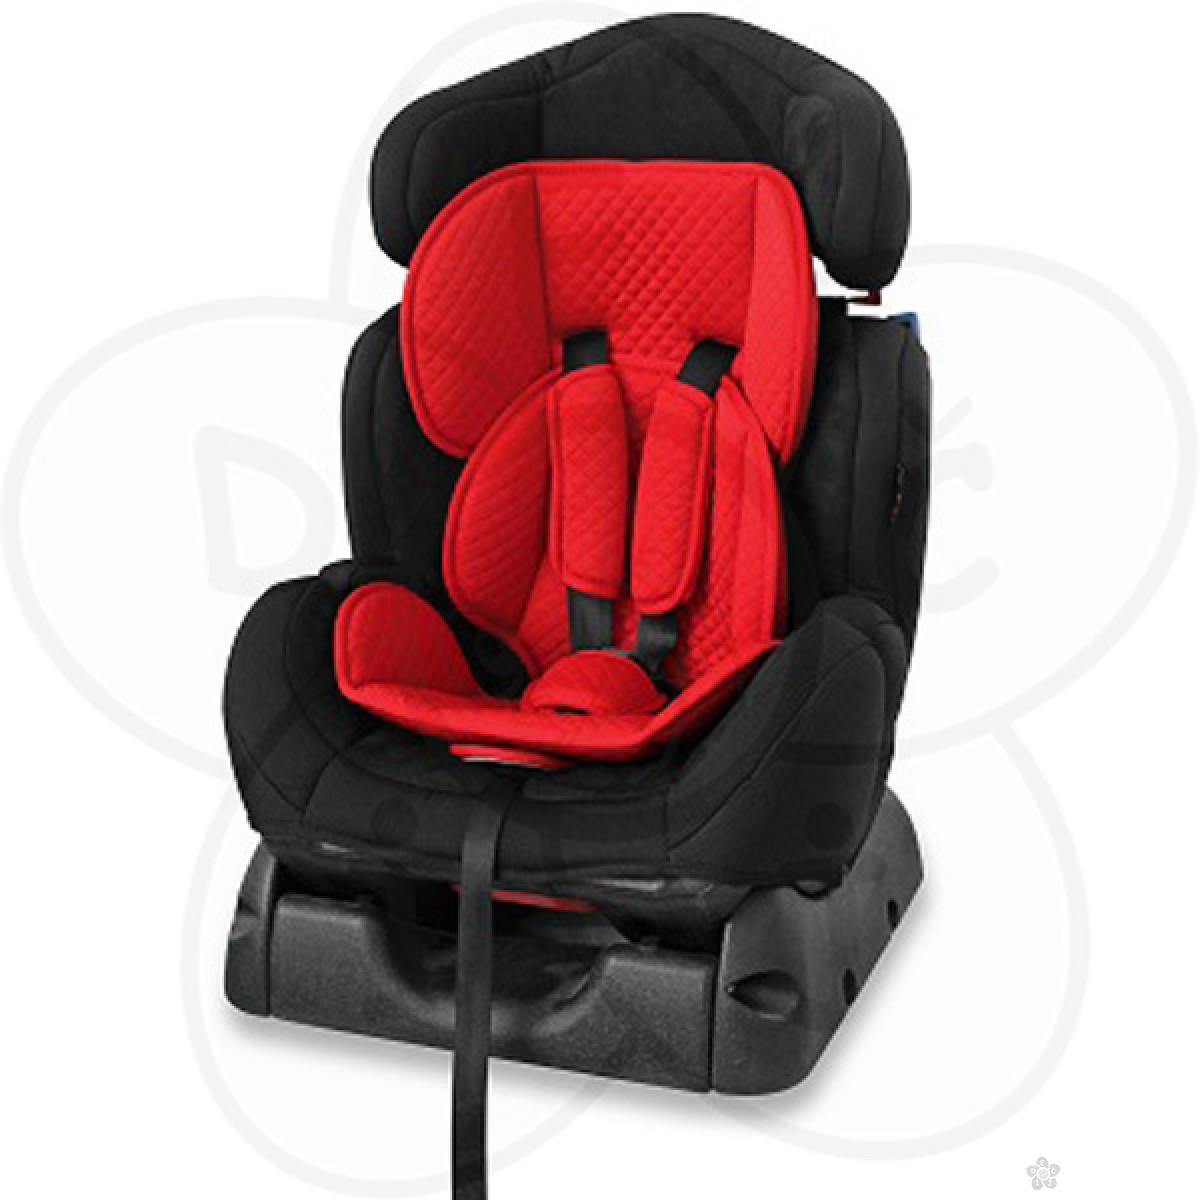 Auto Sedište Safeguard - Black & Red 0-25kg 